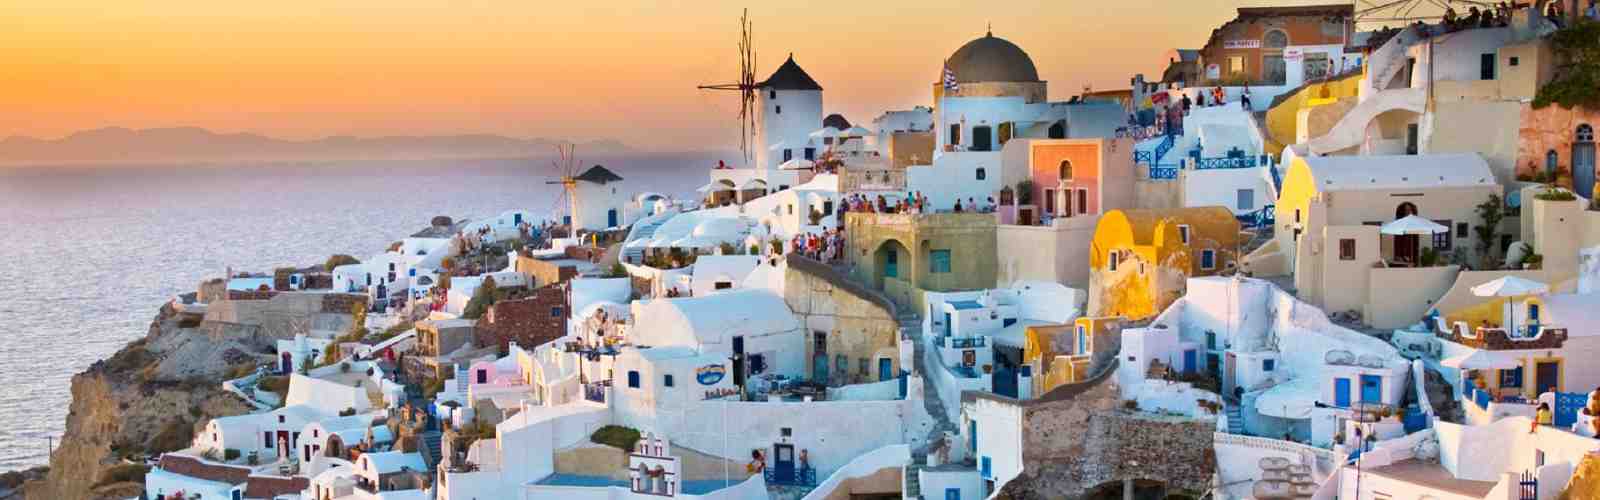 Quelle île grecque pour les plages?